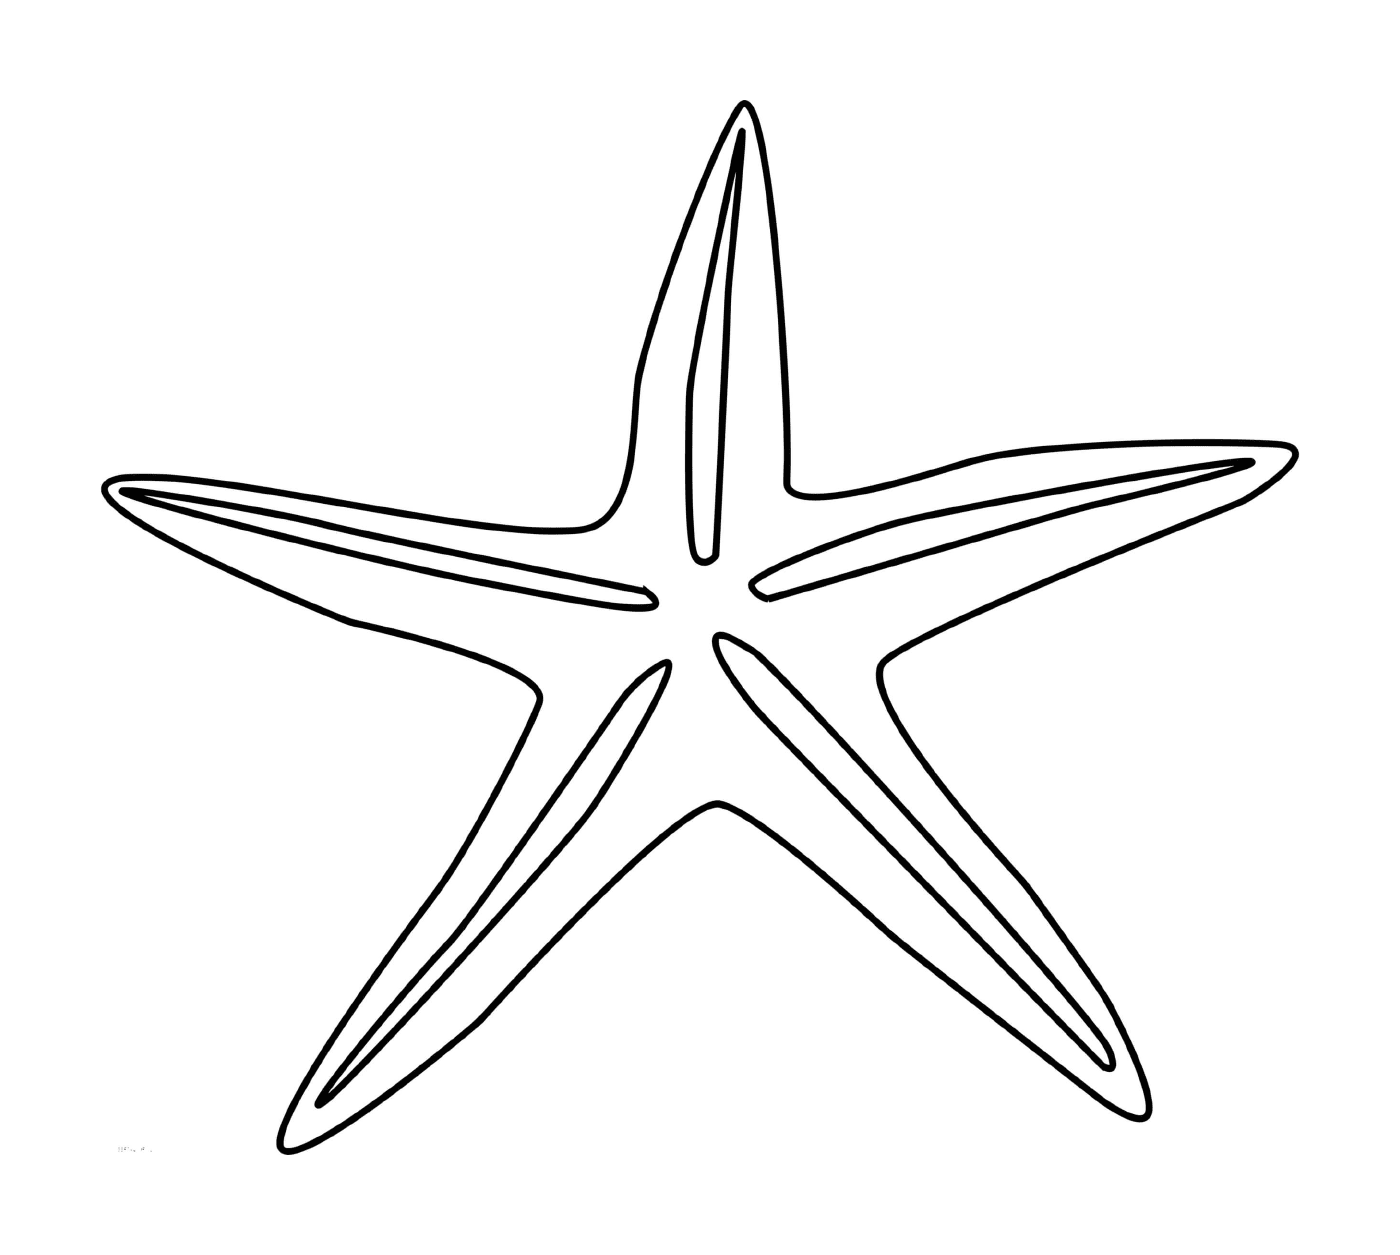  Una stella del mare semplice e facile da disegnare 